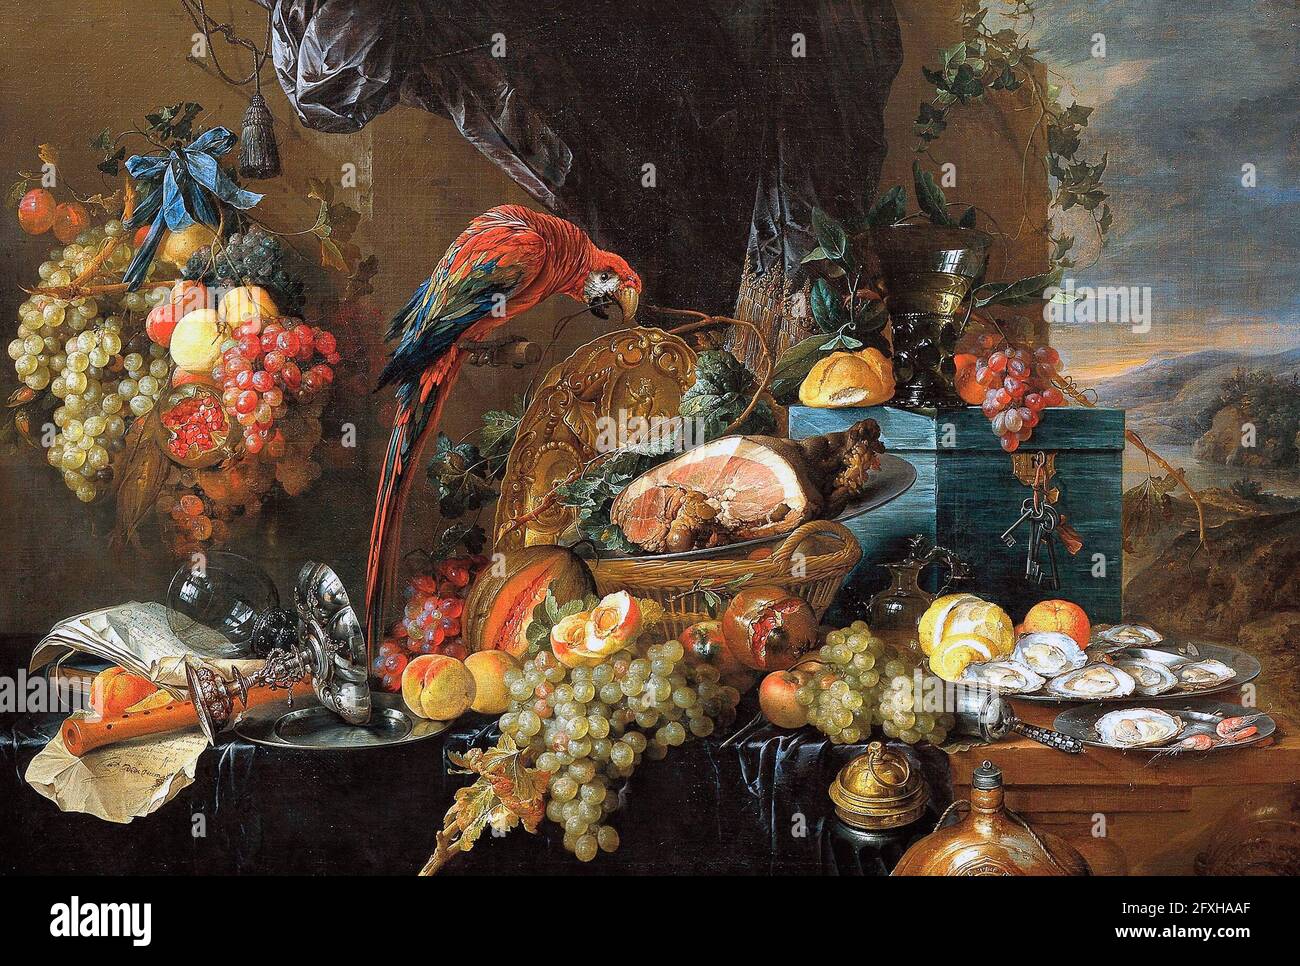 Une vie encore abondante avec un perroquet - Jan Davidsz. De Heem, vers 1650 Banque D'Images